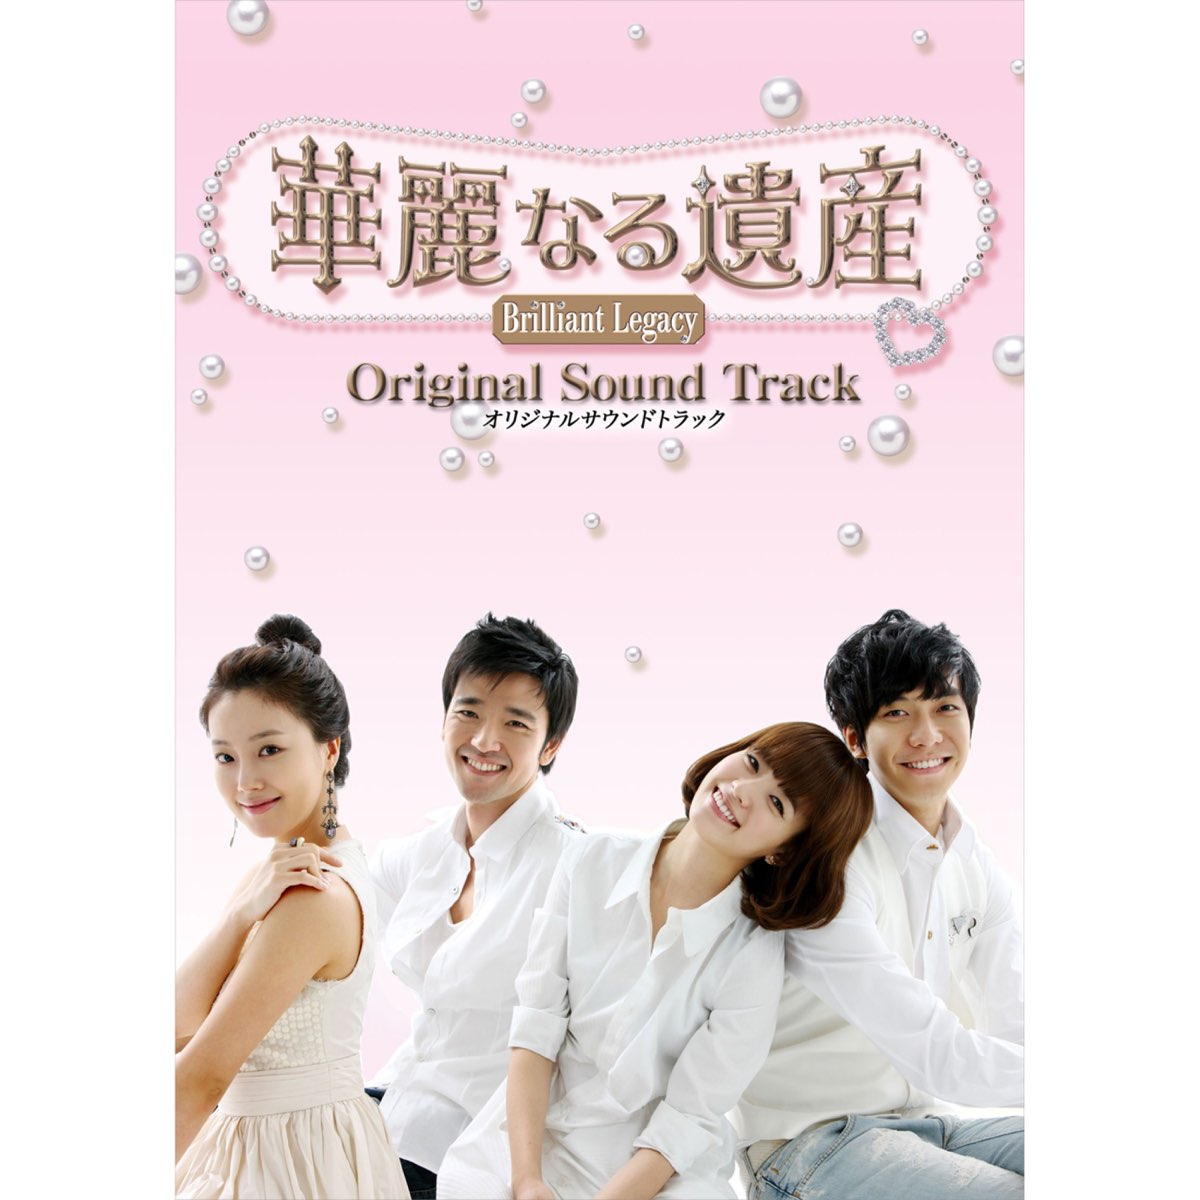 ‎ヴァリアス・アーティストの「韓国ドラマ「華麗なる遺産」オリジナルサウンドトラック」をapple Musicで 